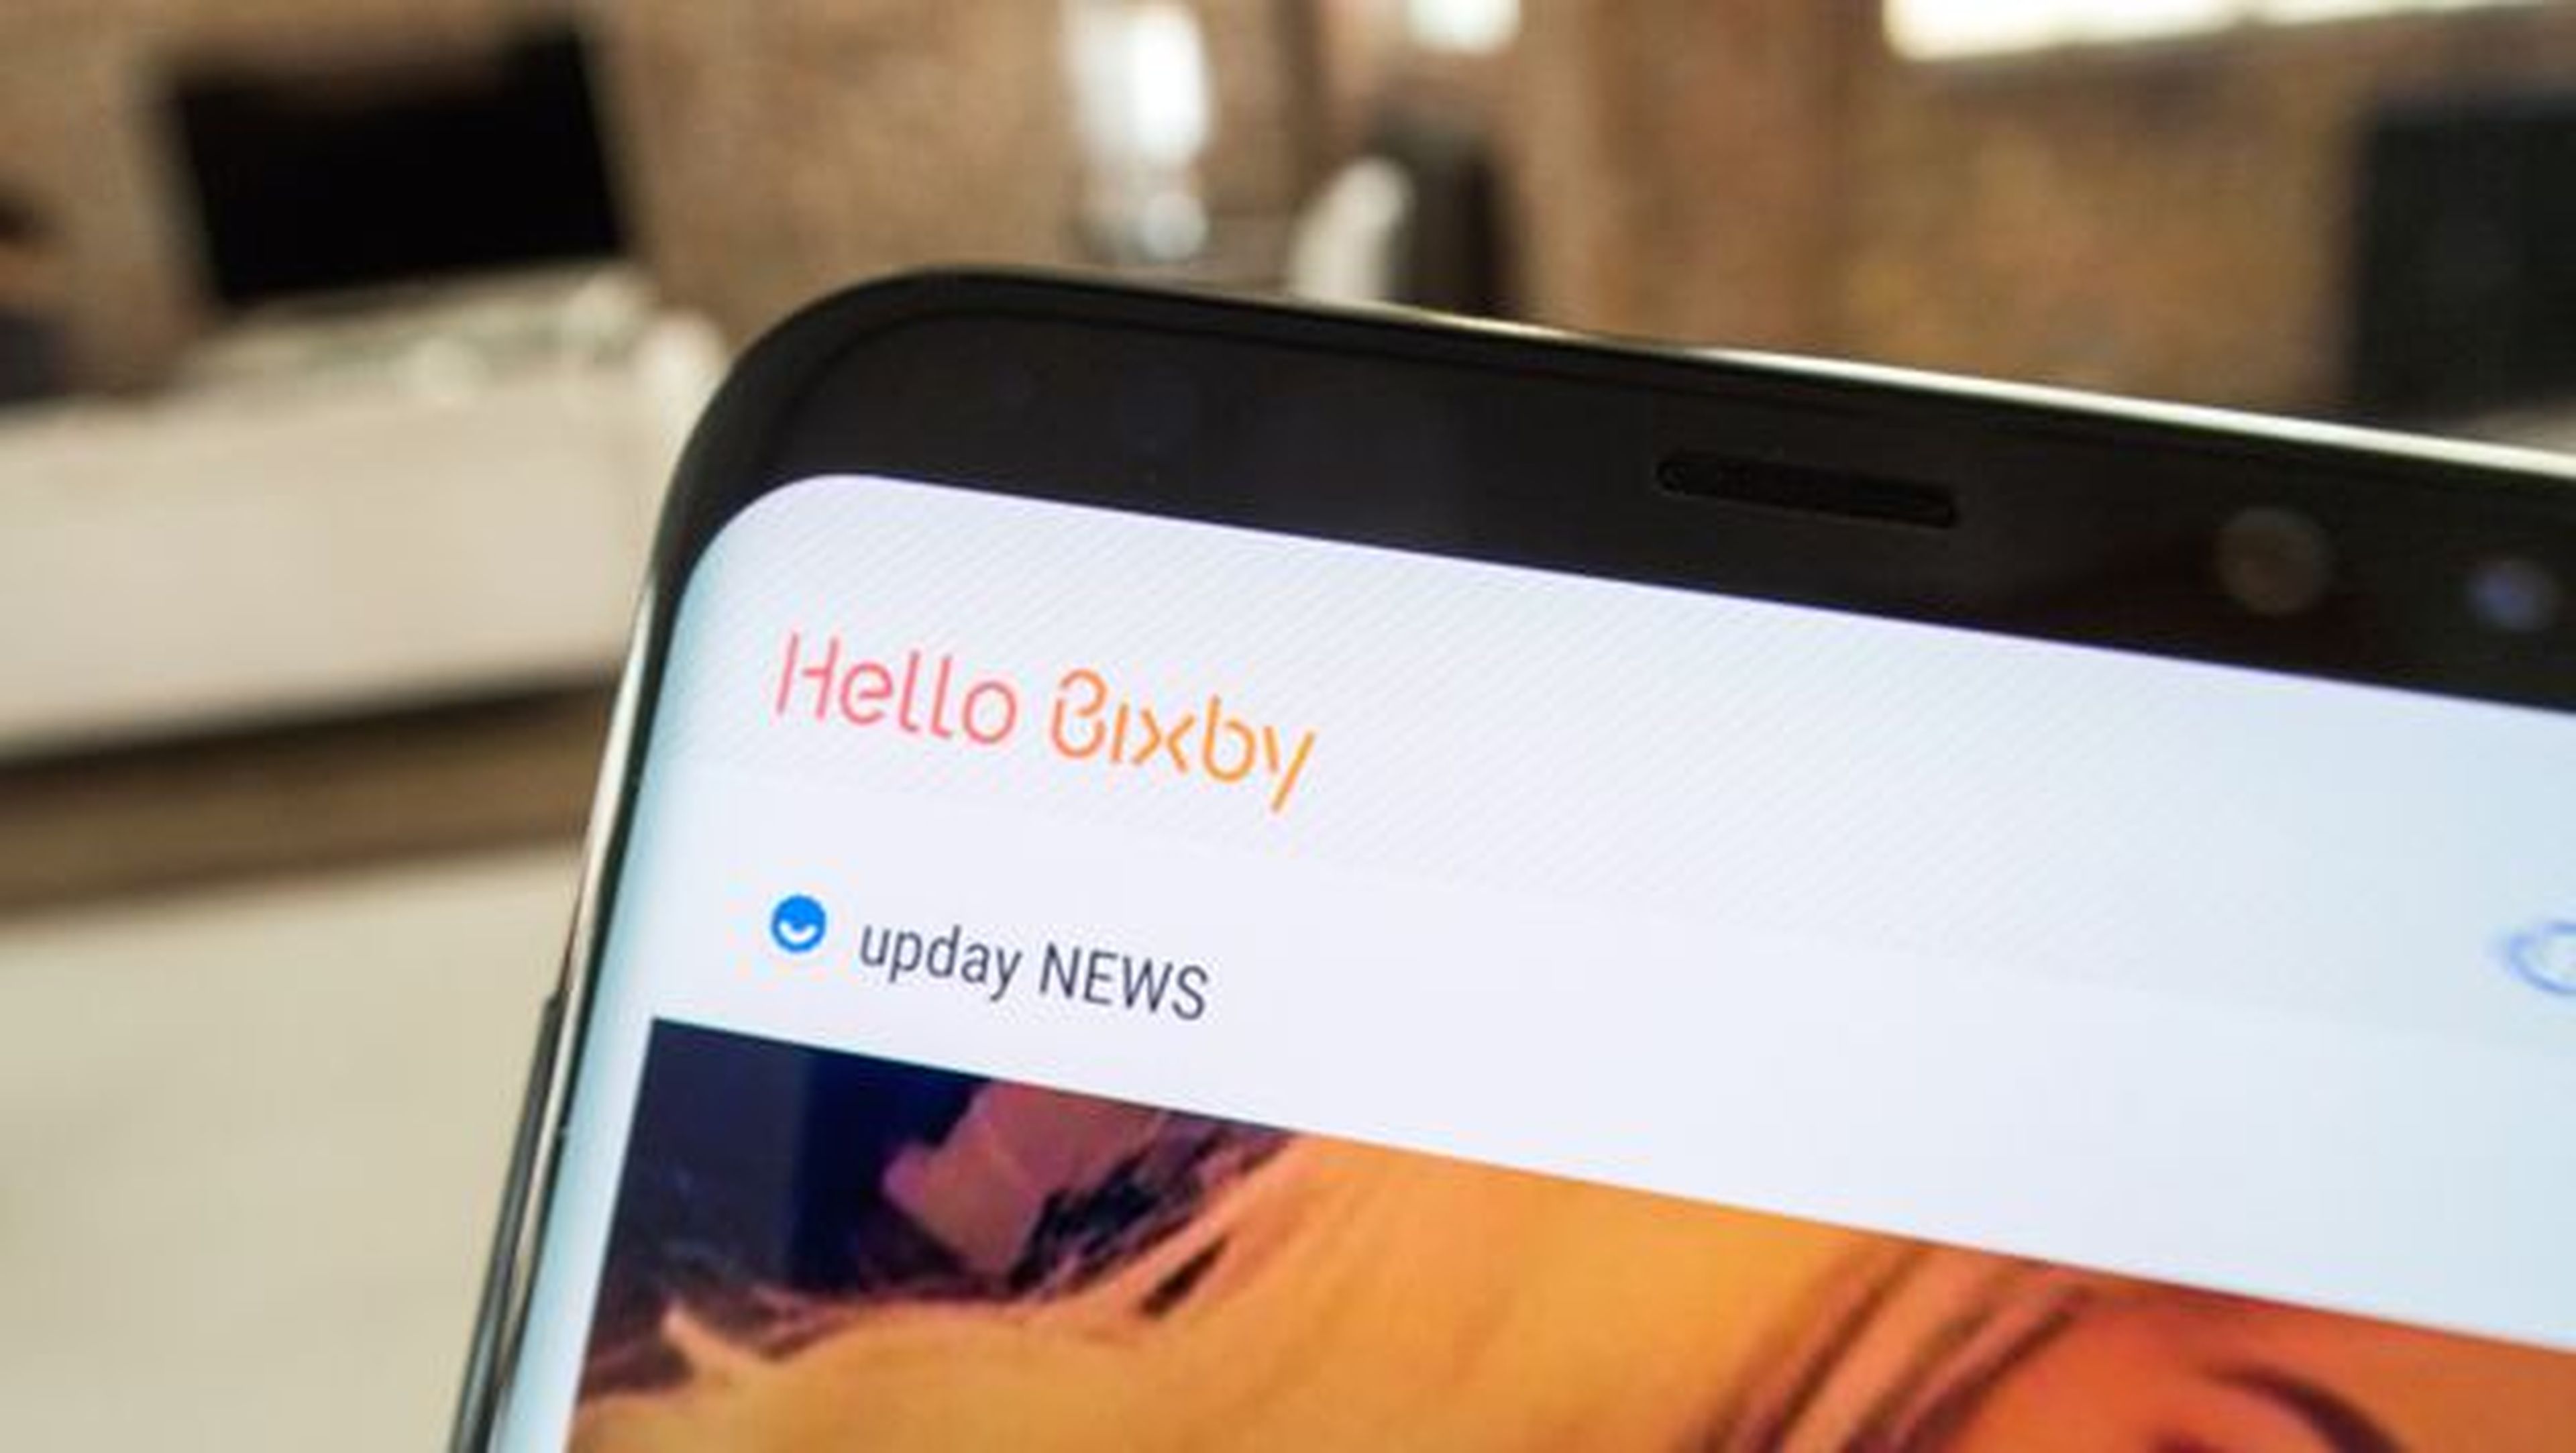 El asistente virtual Bixby estará disponible en los Samsung Galaxy S8 y S8+